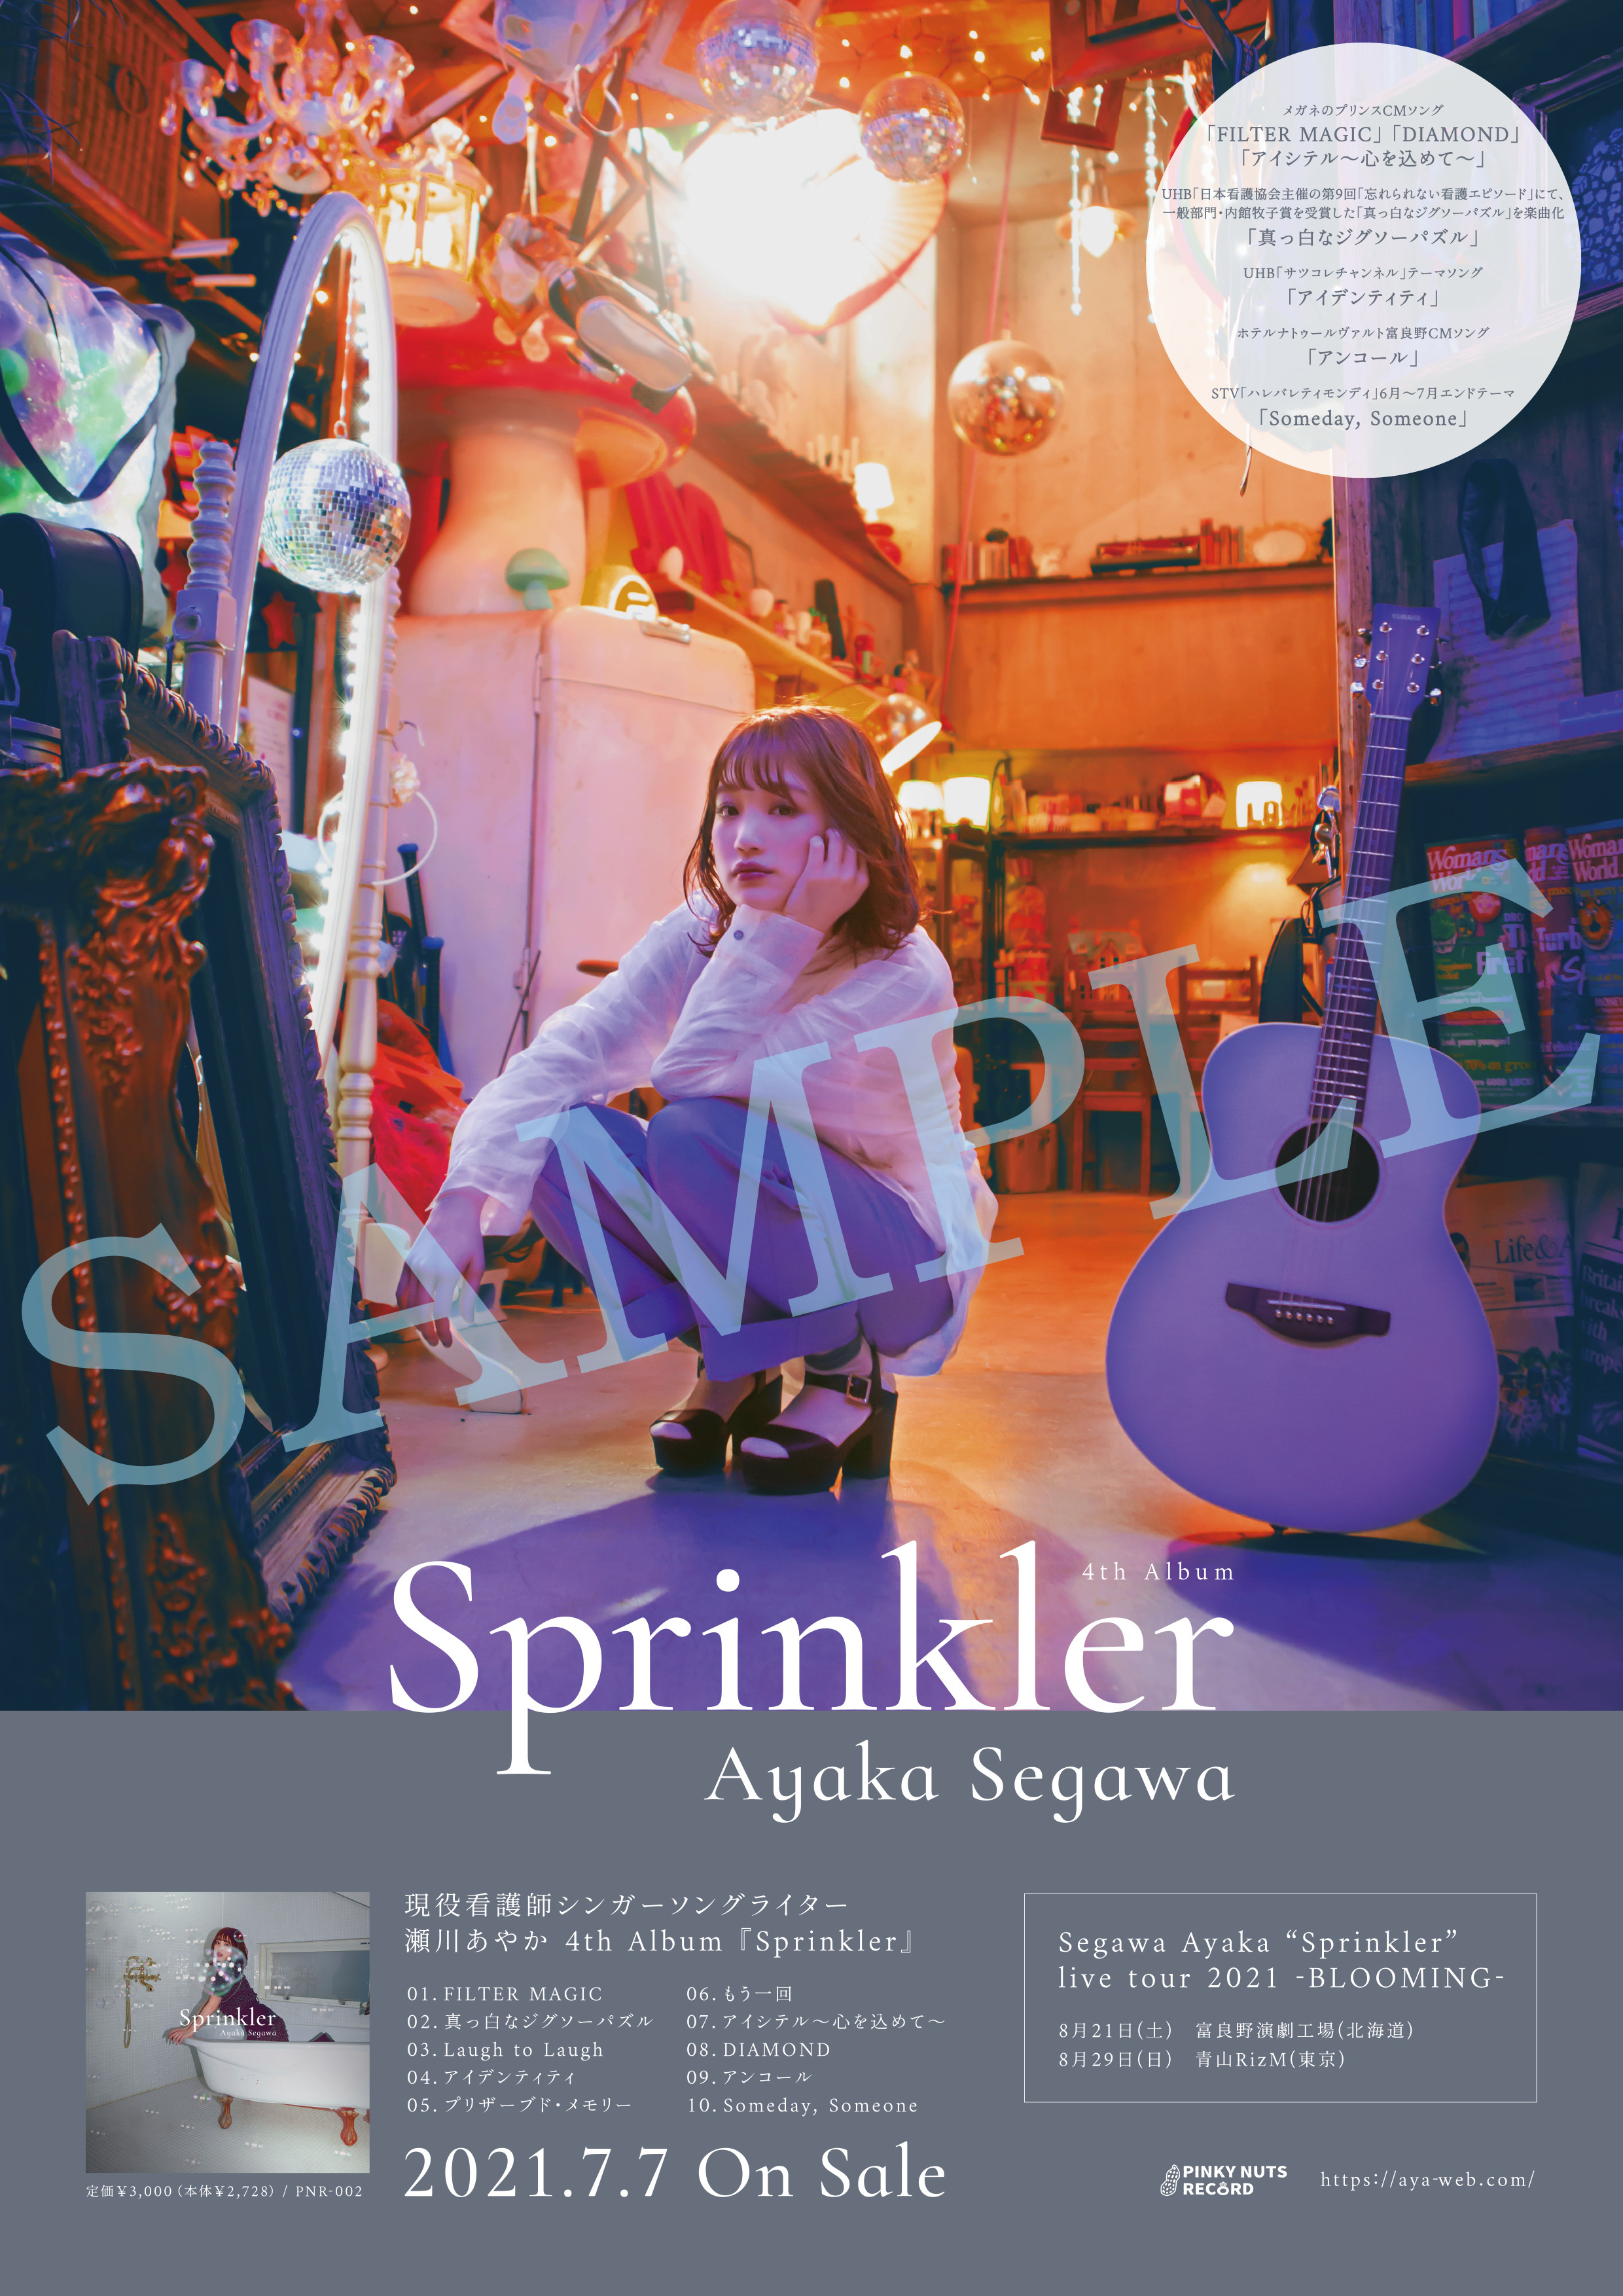 ★サイン入りポスター付き★4th Album「Sprinkler」